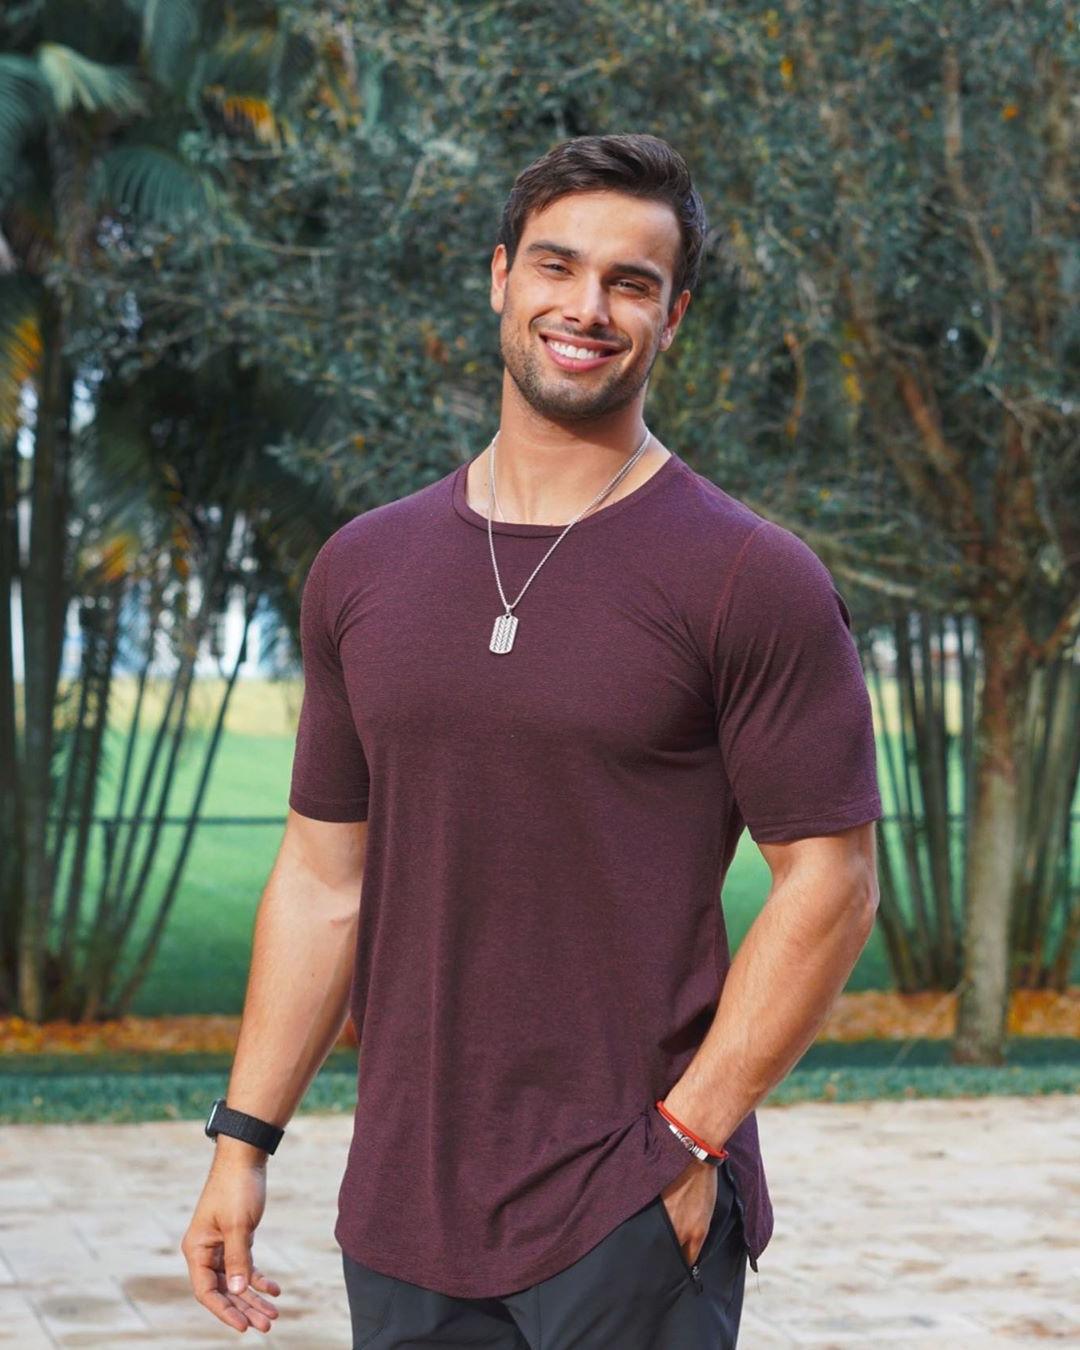 cute-brazilian-guys-smiling-fit-muscular-hunk